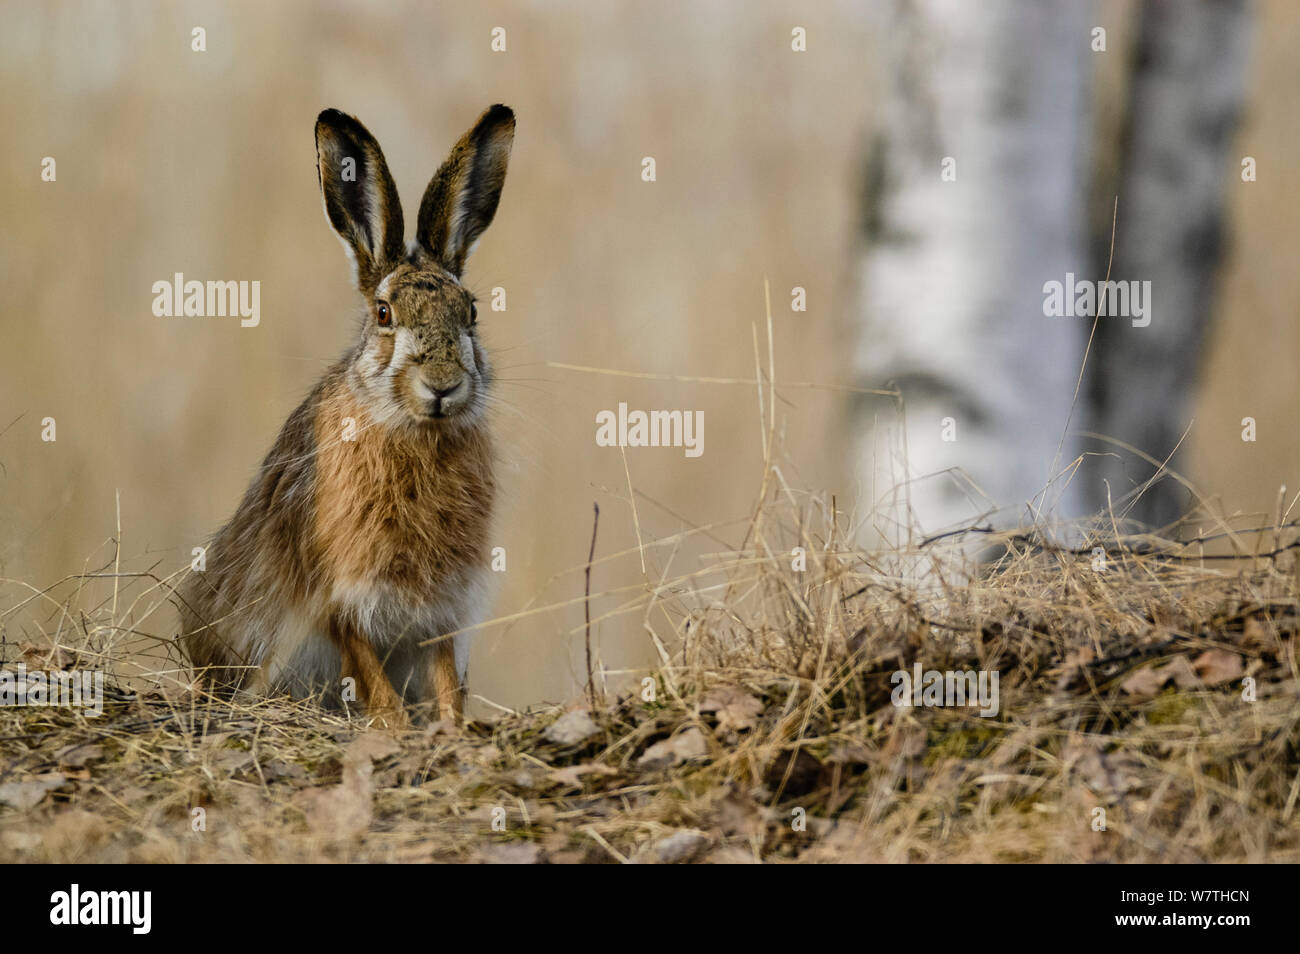 Europäische hare (Lepus europaeus) Porträt, Mittelfinnland, April. Stockfoto